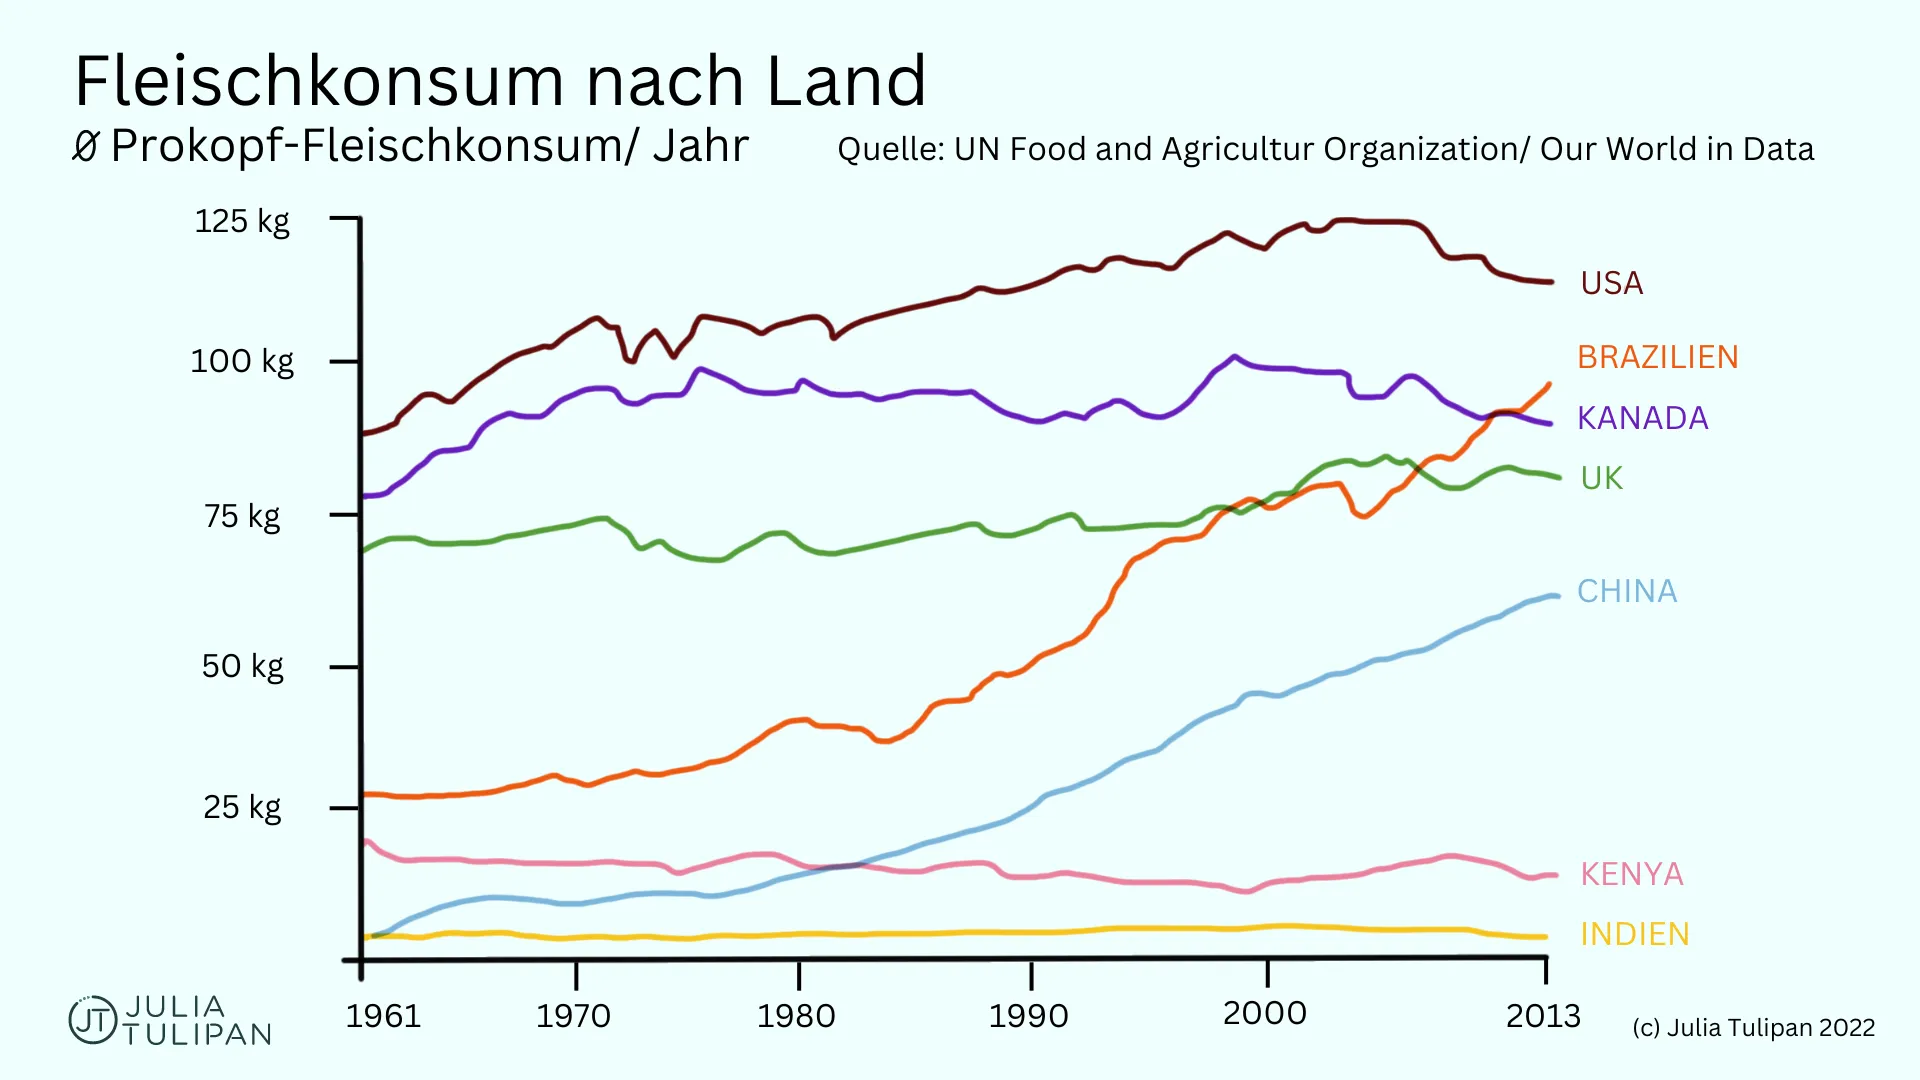 Fleischkonsum nach Land von 1961-2013